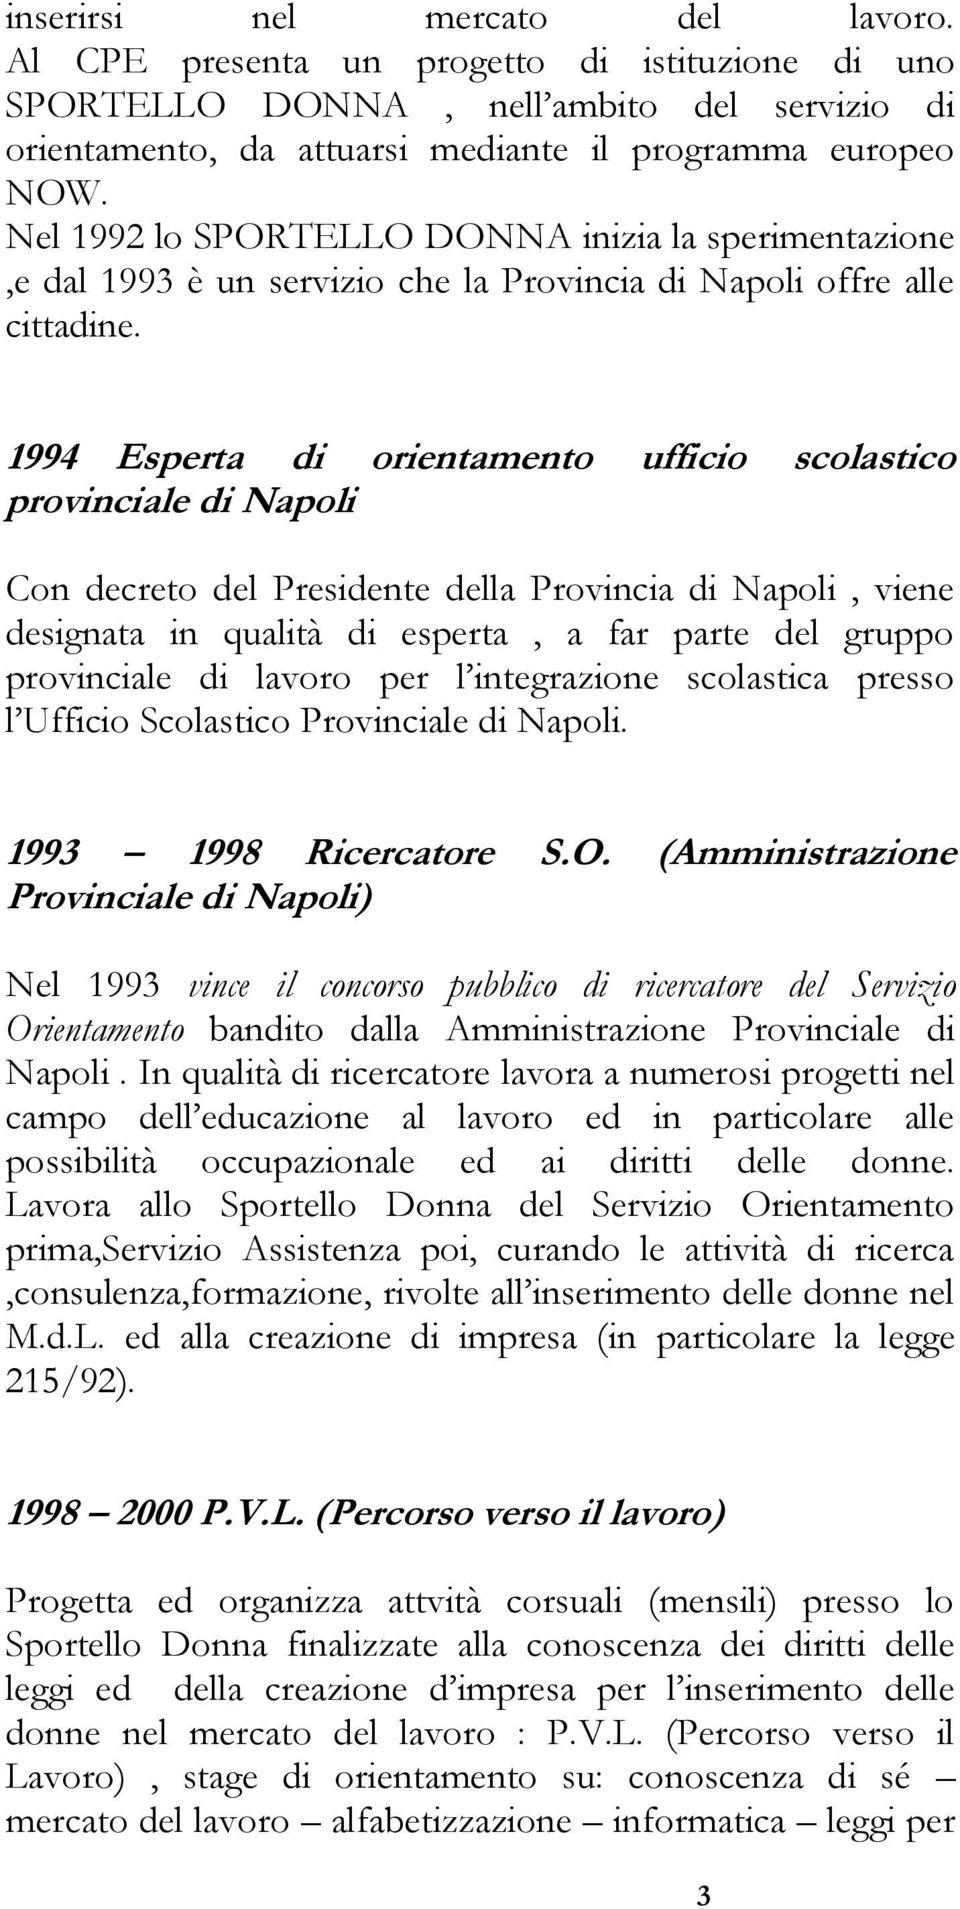 1994 Esperta di orientamento ufficio scolastico provinciale di Napoli Con decreto del Presidente della Provincia di Napoli, viene designata in qualità di esperta, a far parte del gruppo provinciale